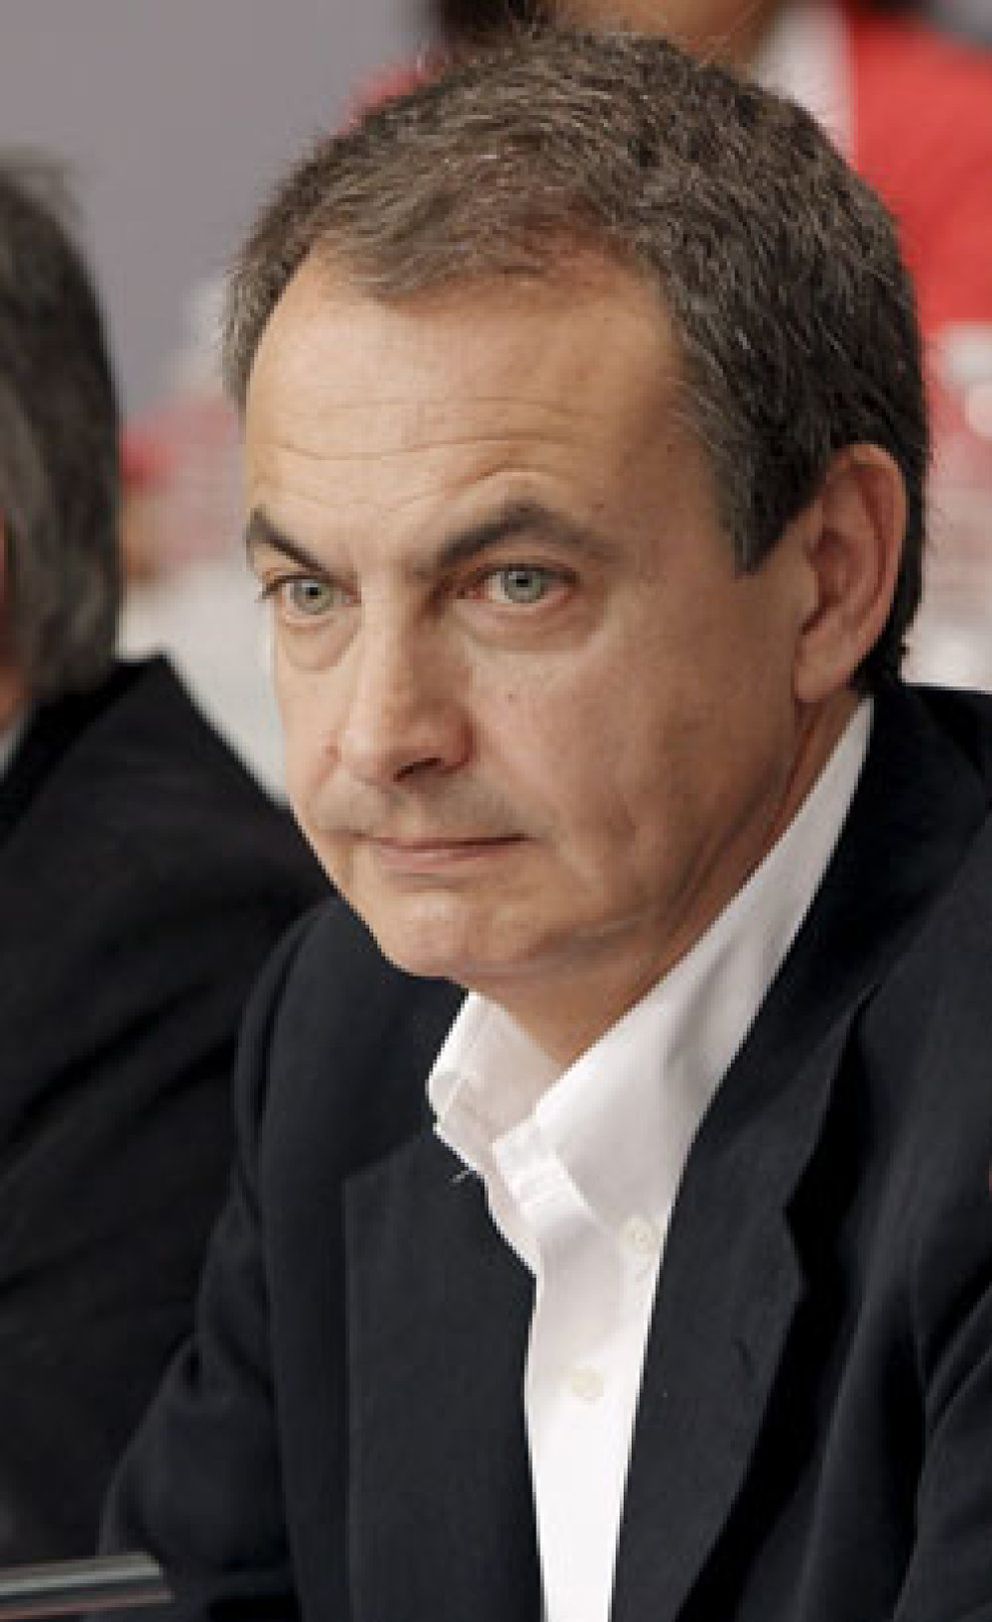 Foto: El FT absuelve a Zapatero: “Con el tiempo, los españoles apreciarán su trabajo en esta crisis”